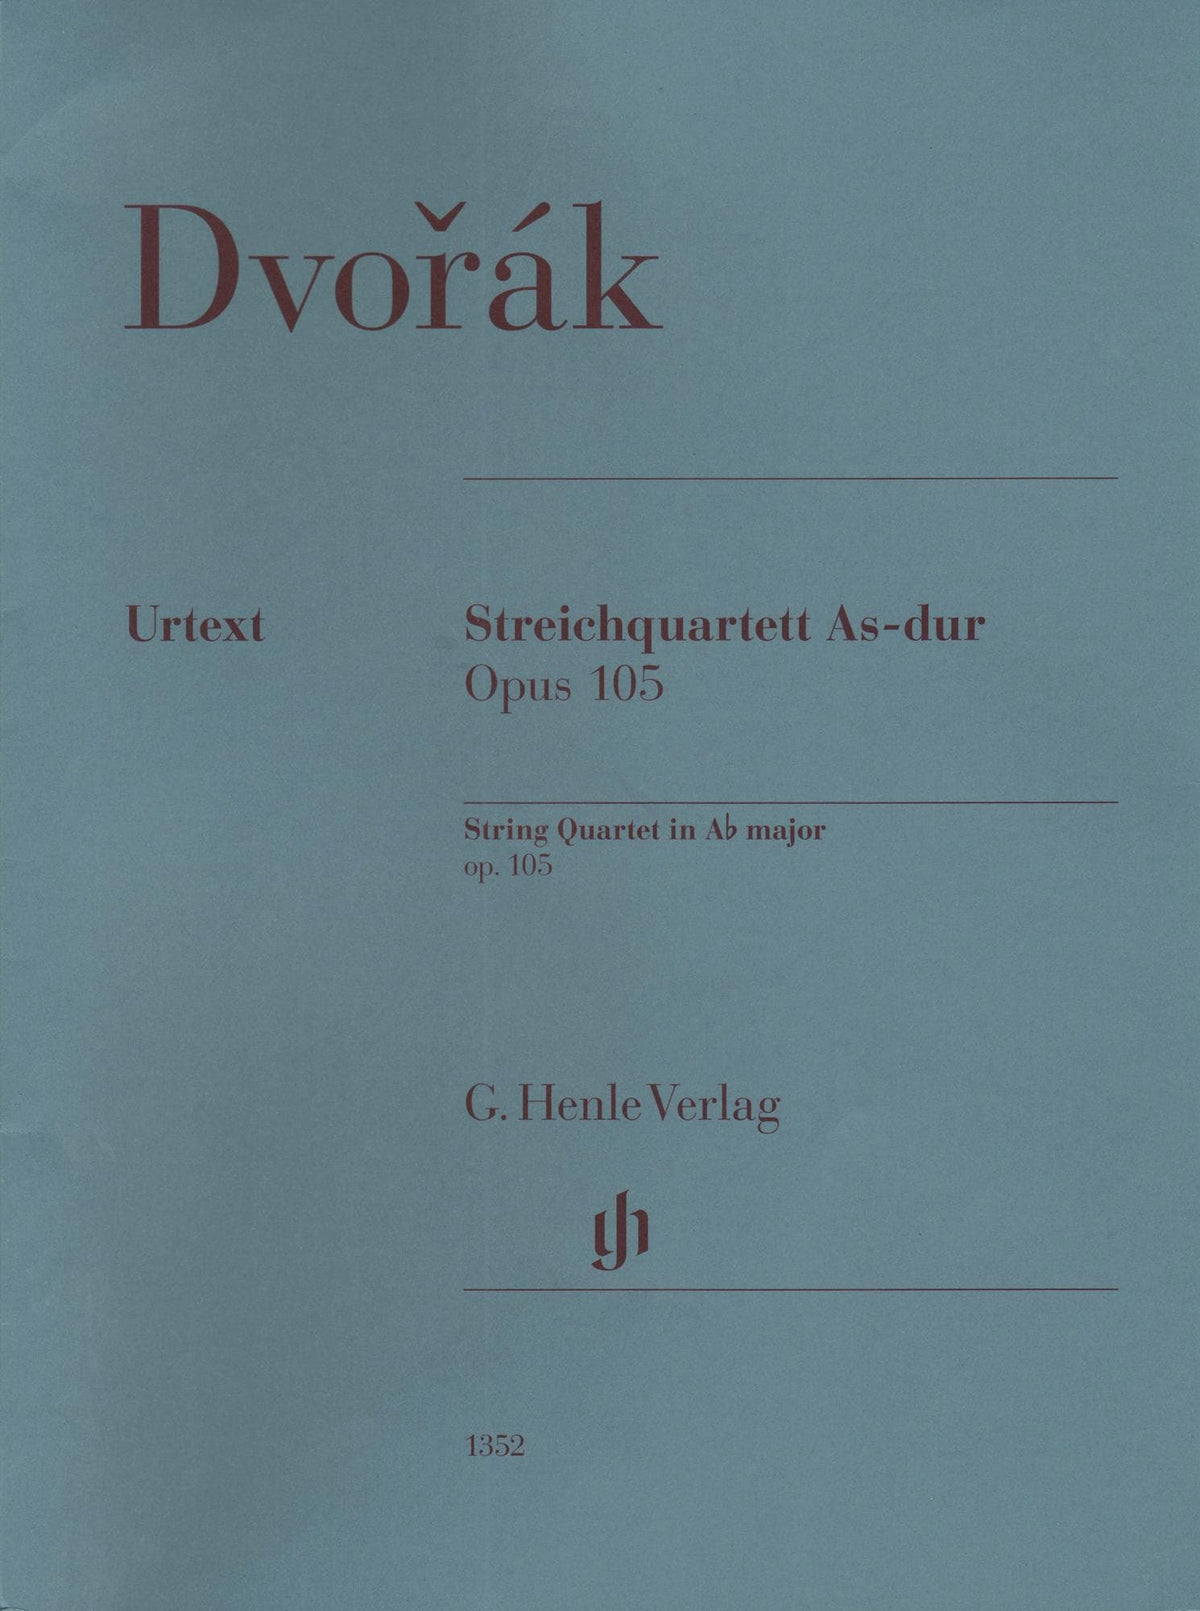 Dvorak, Antonin - String Quartet in A-flat major, op. 105 - for String Quartet - G. Henle Verlag URTEXT